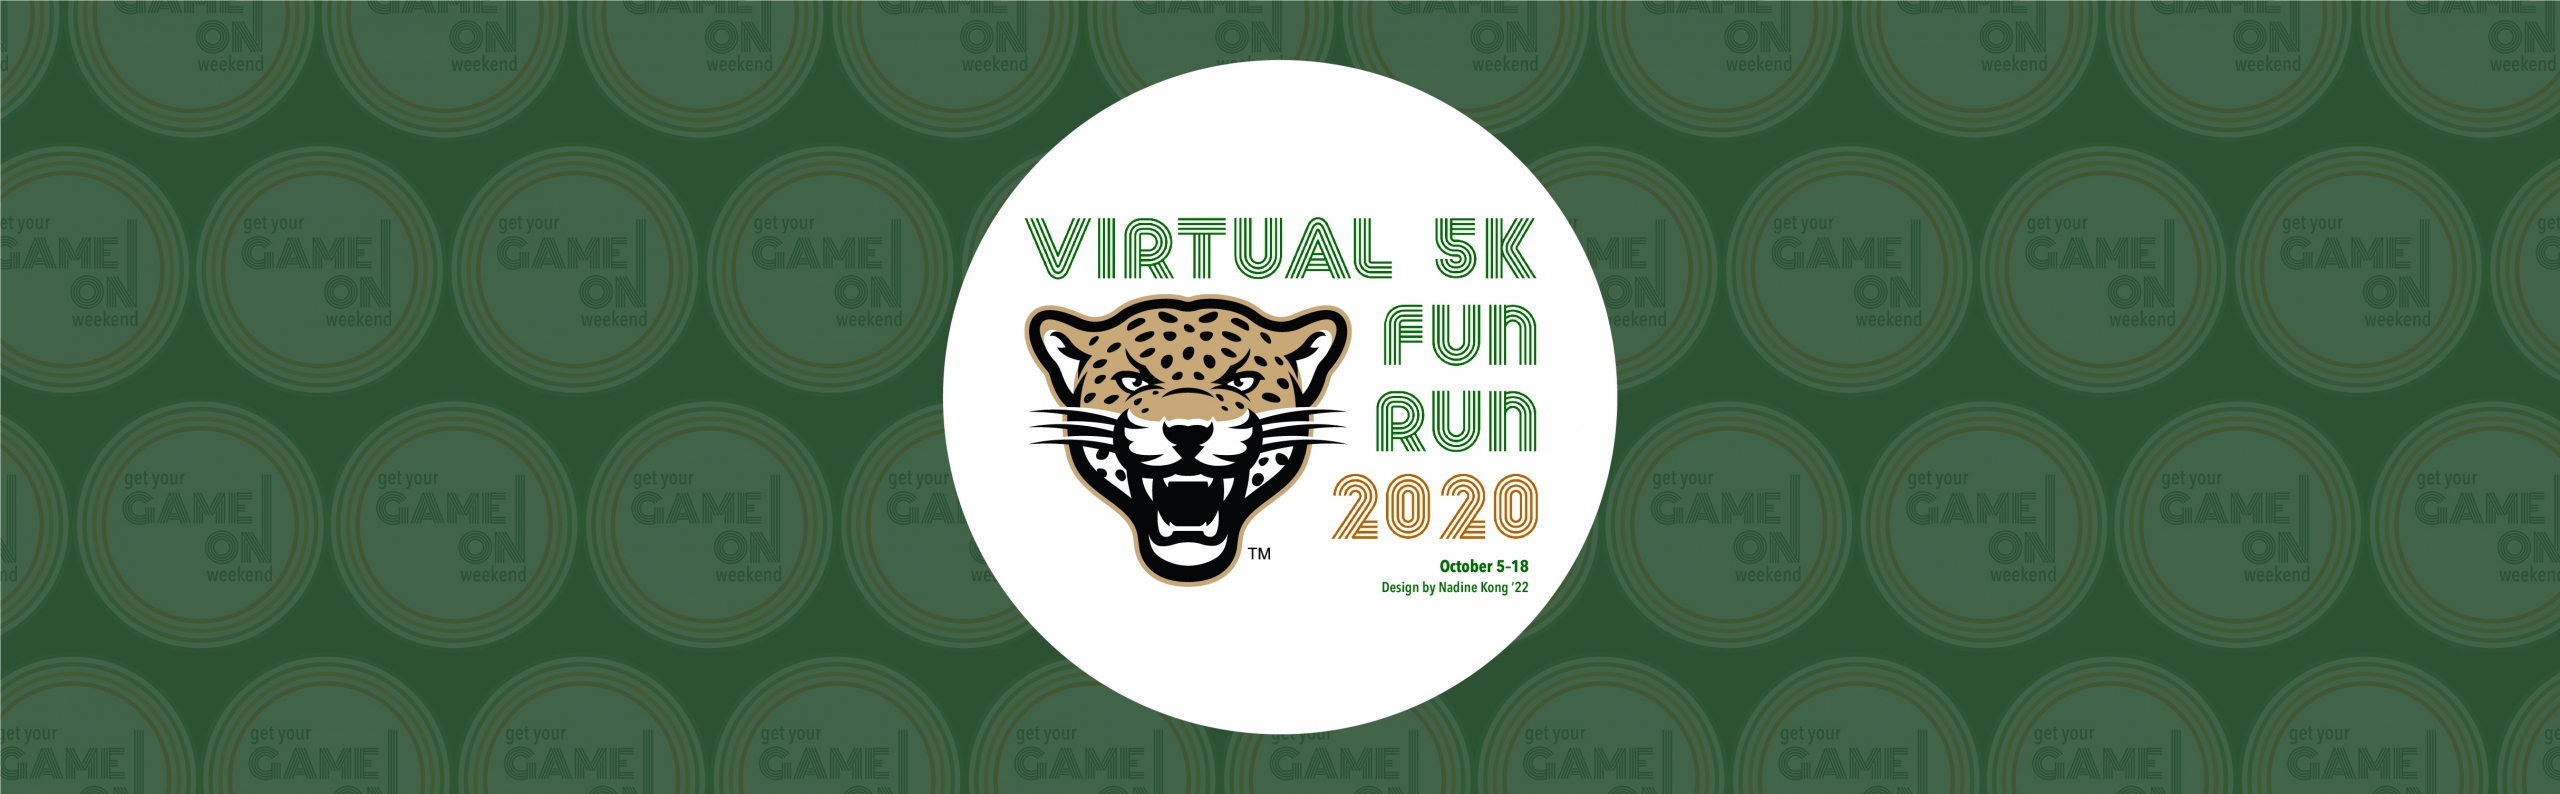 Virtual 5K Fun Run 2020